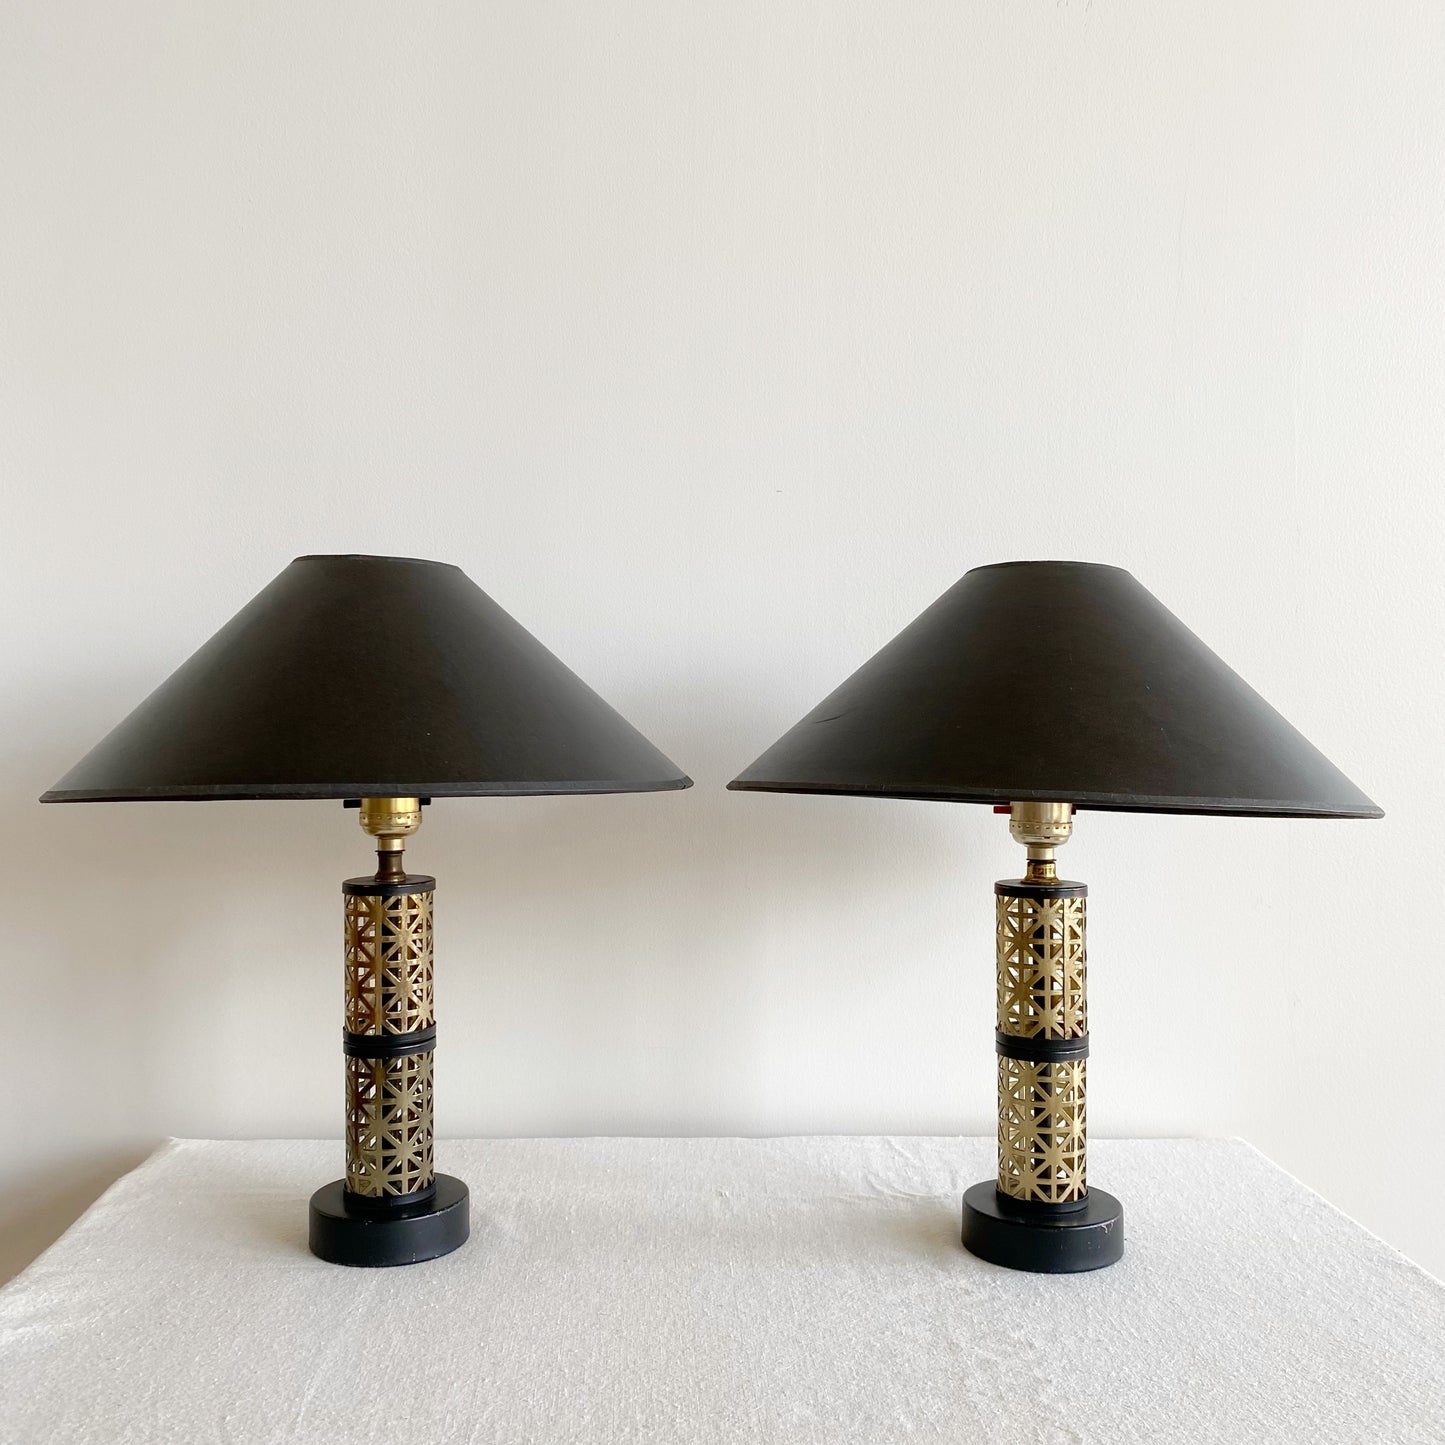 Pair of Vintage Atomic Era Lamps